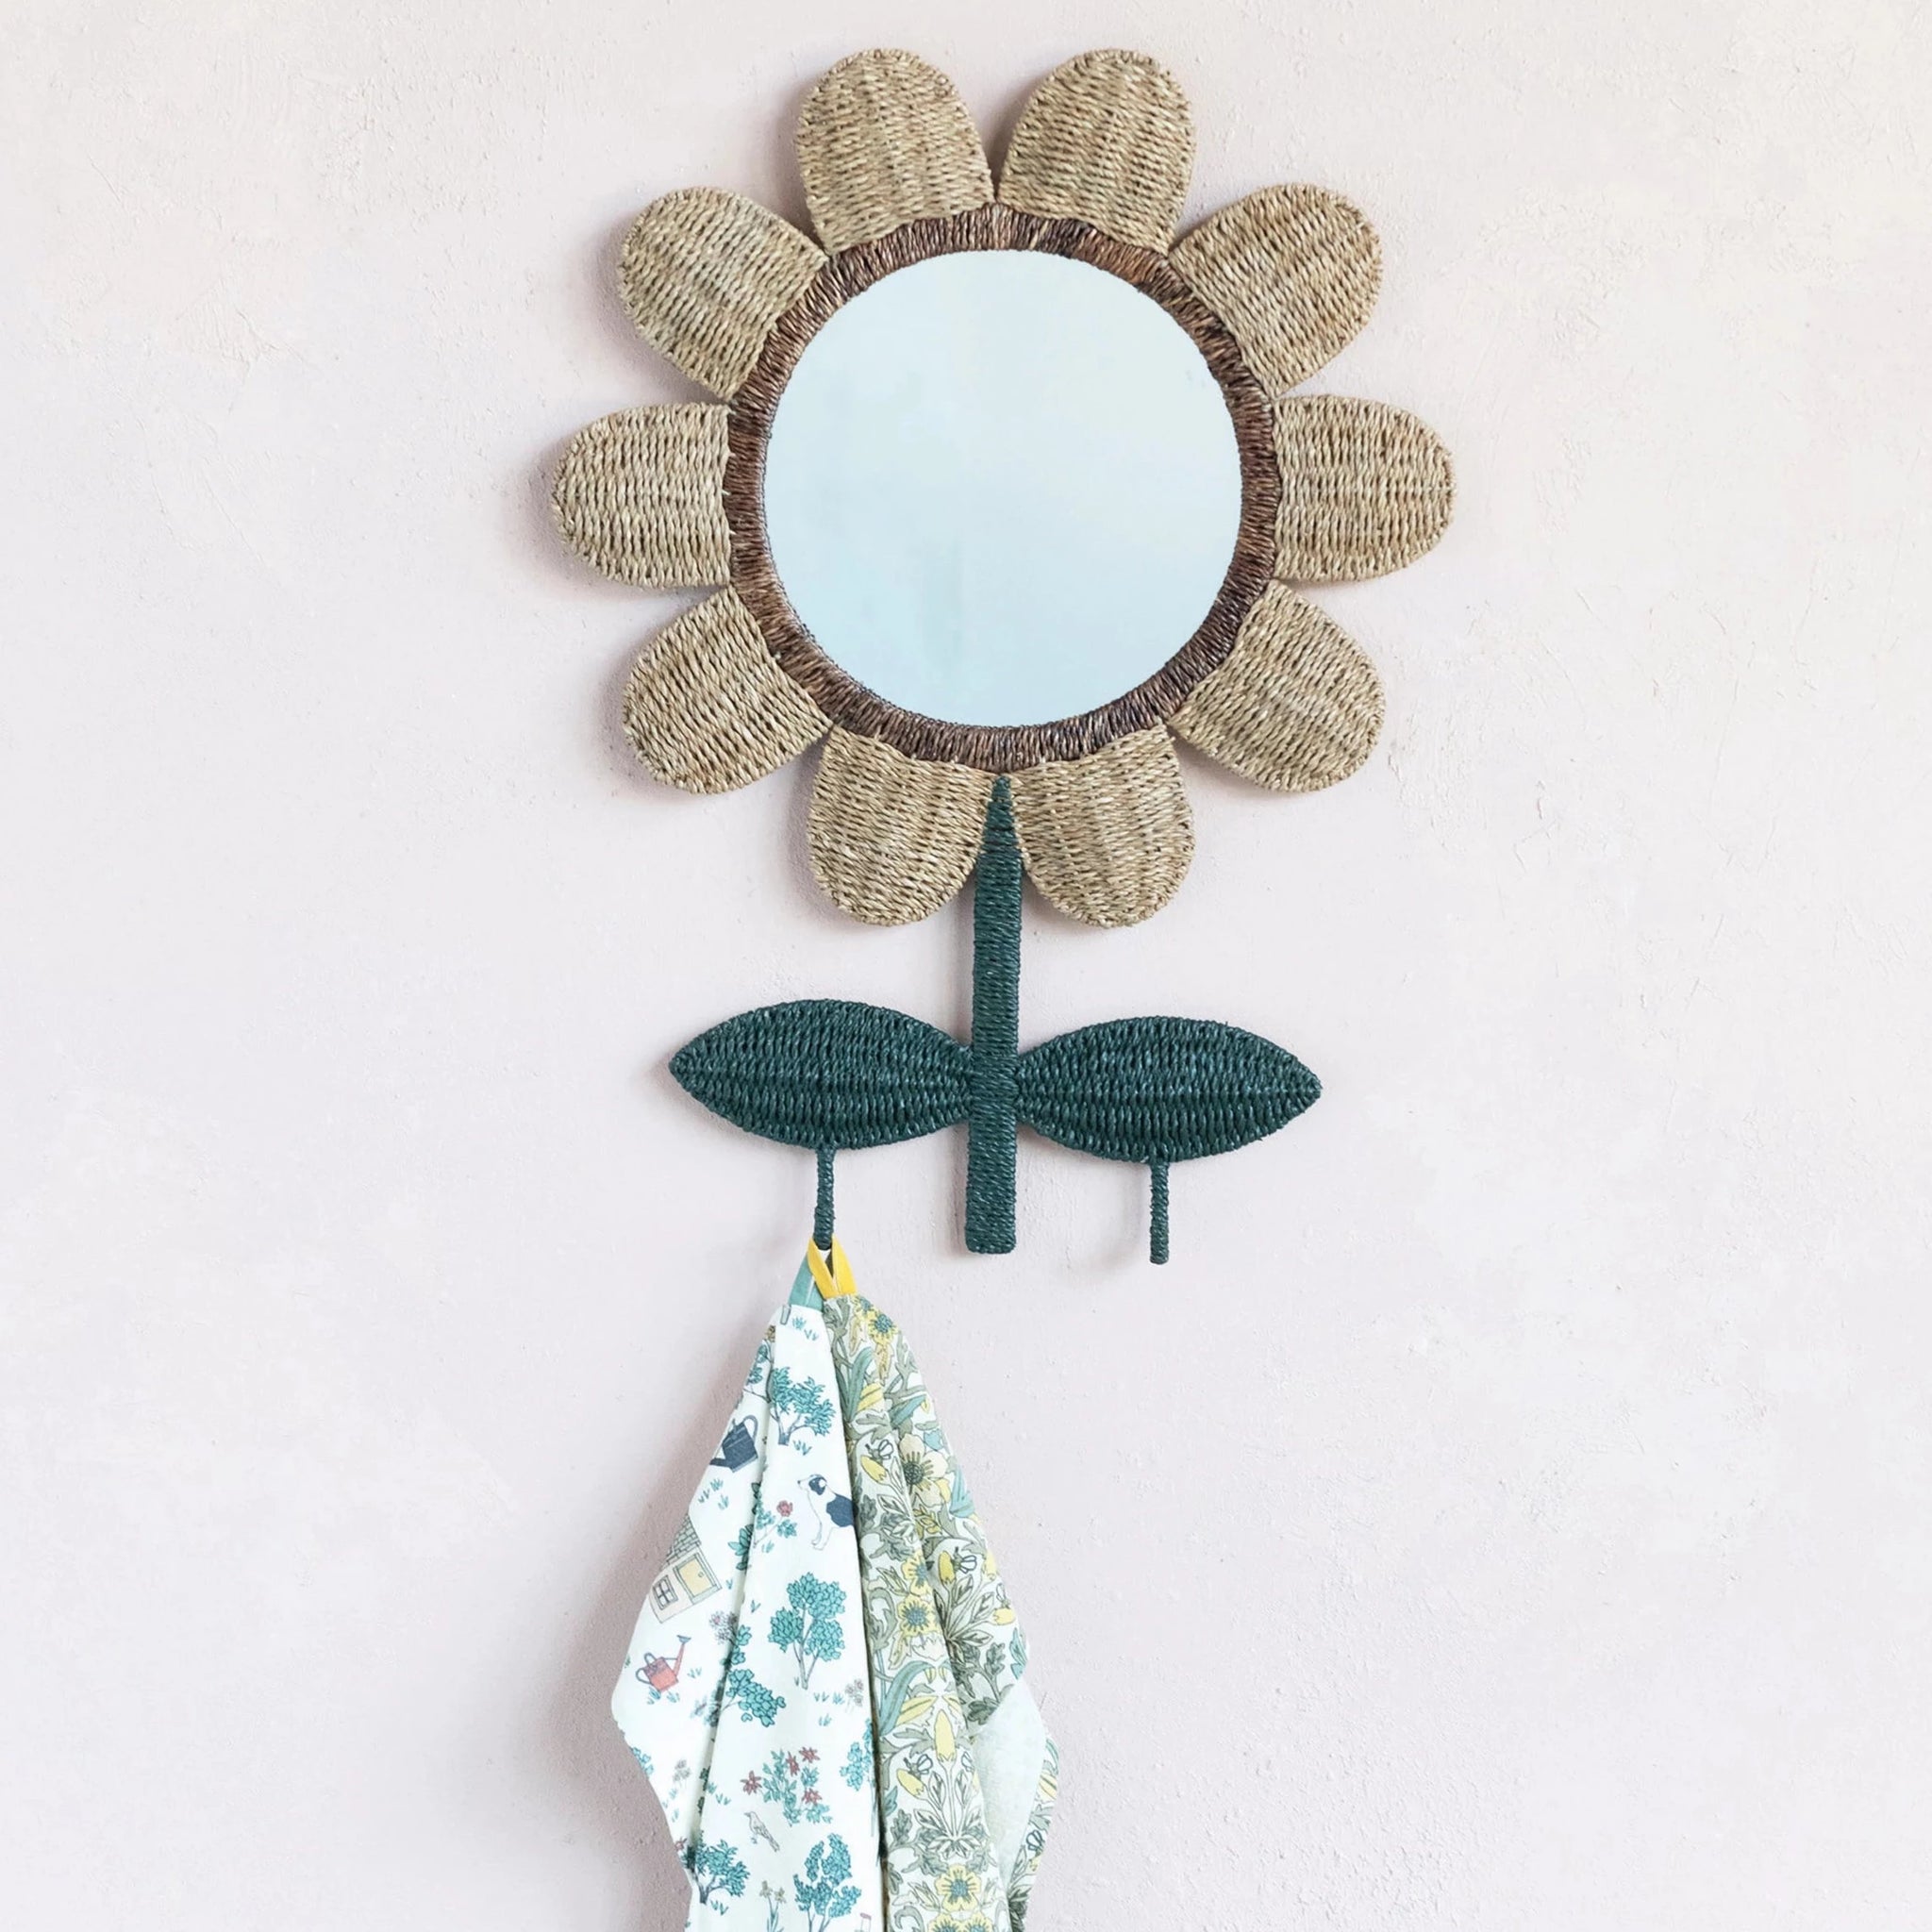 Hand-Woven & Metal Flower Wall Mirror w/ 2 Hooks – Little Barn Baby